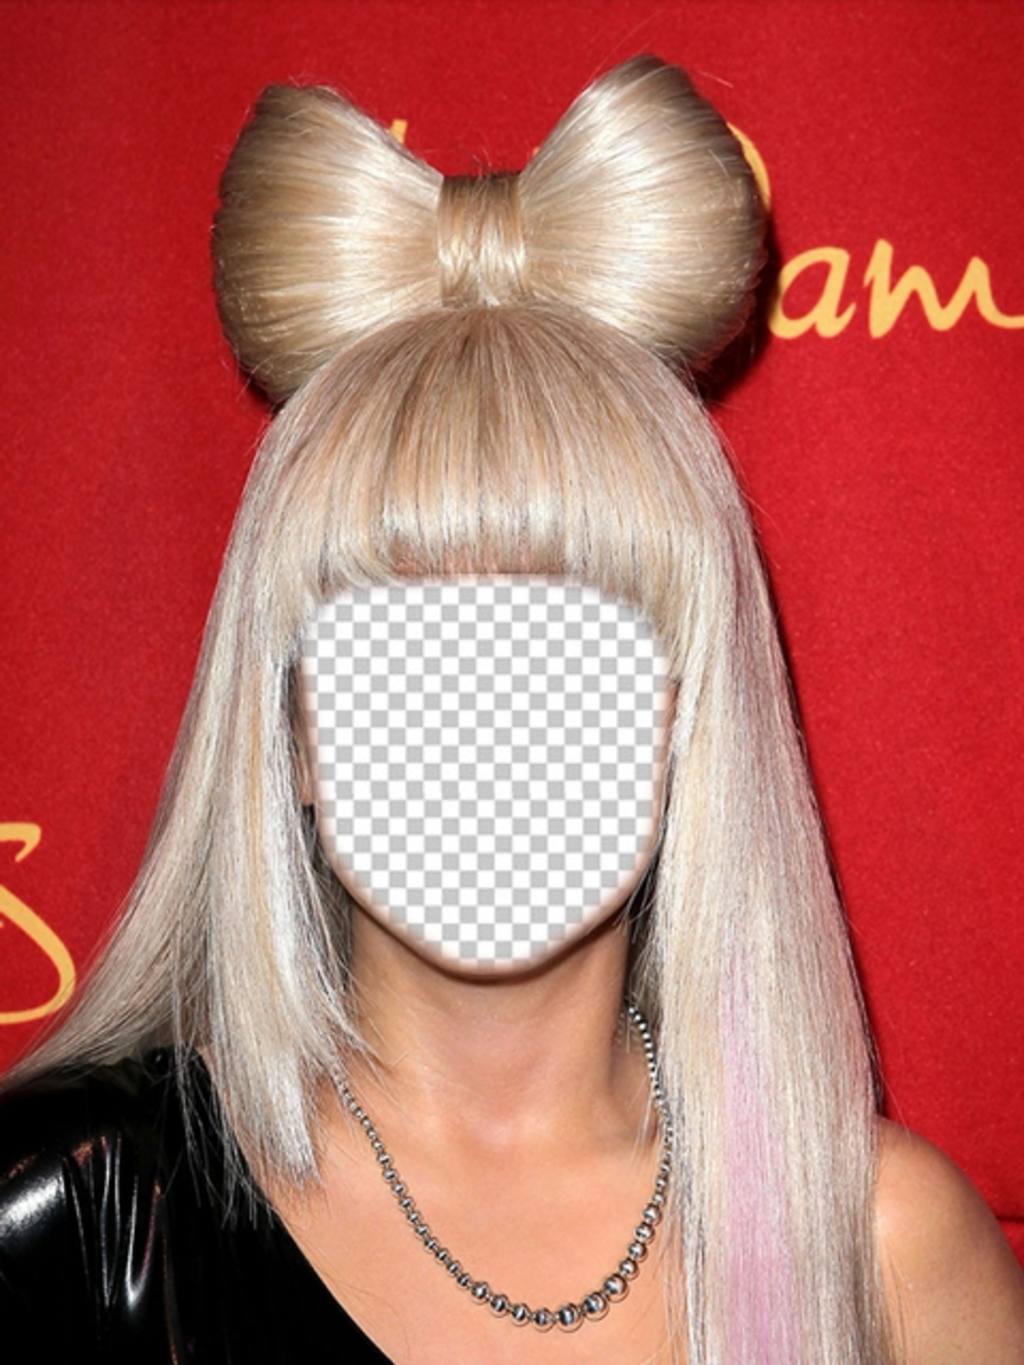 Vestir-se como Lady Gaga, com seu cabelo loiro com esta fotomontagem ..